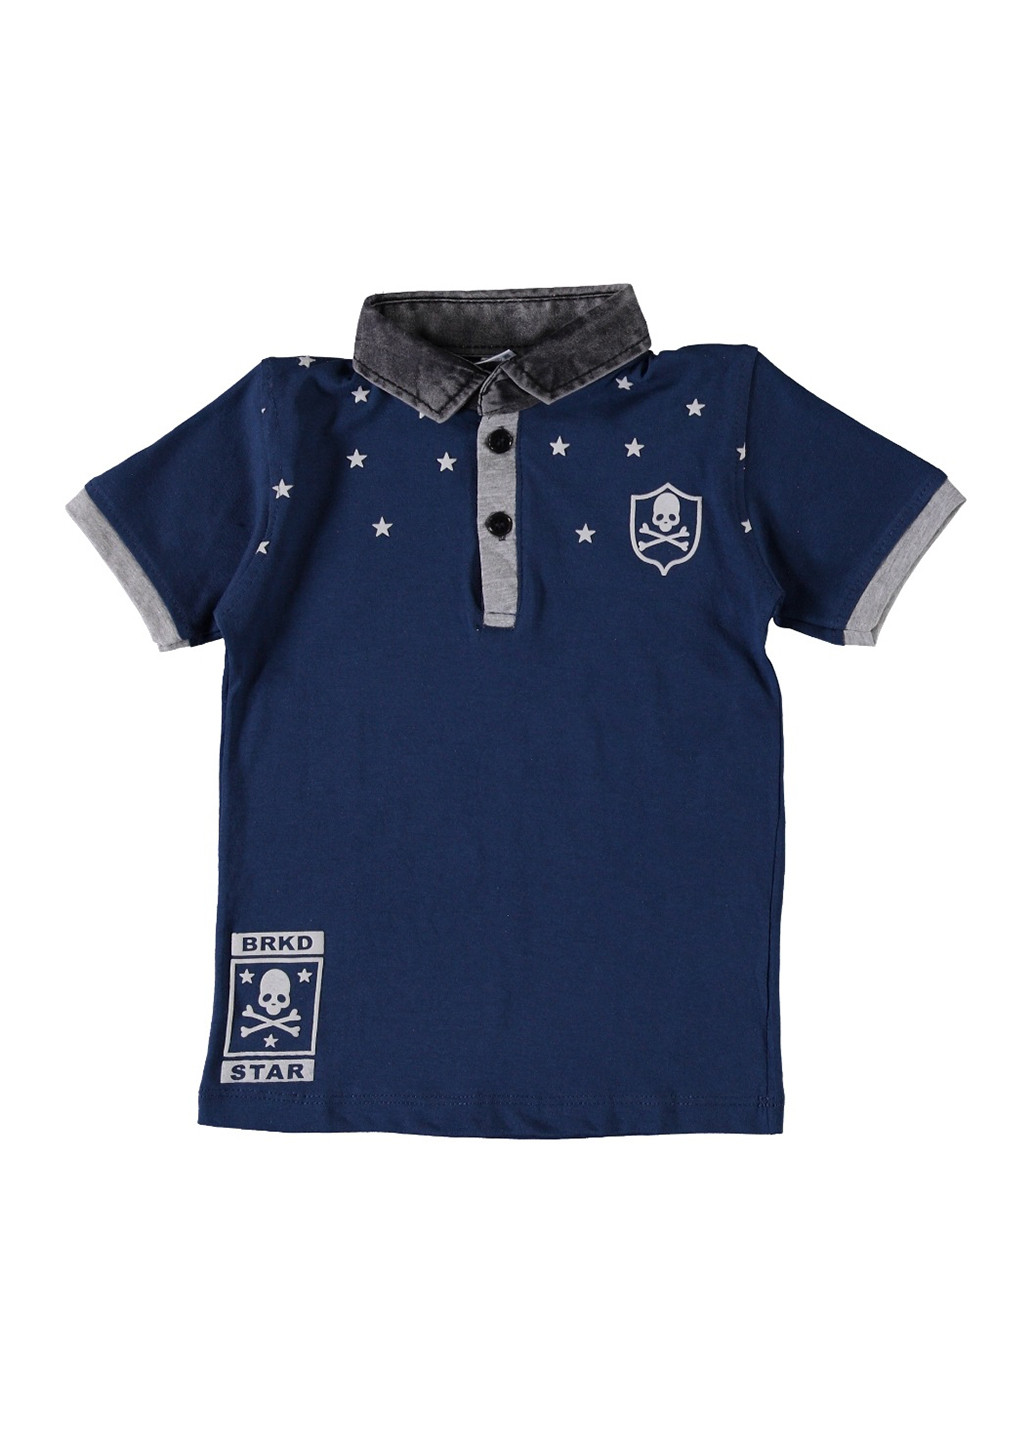 Темно-синяя детская футболка-поло для мальчика Hexing с надписью